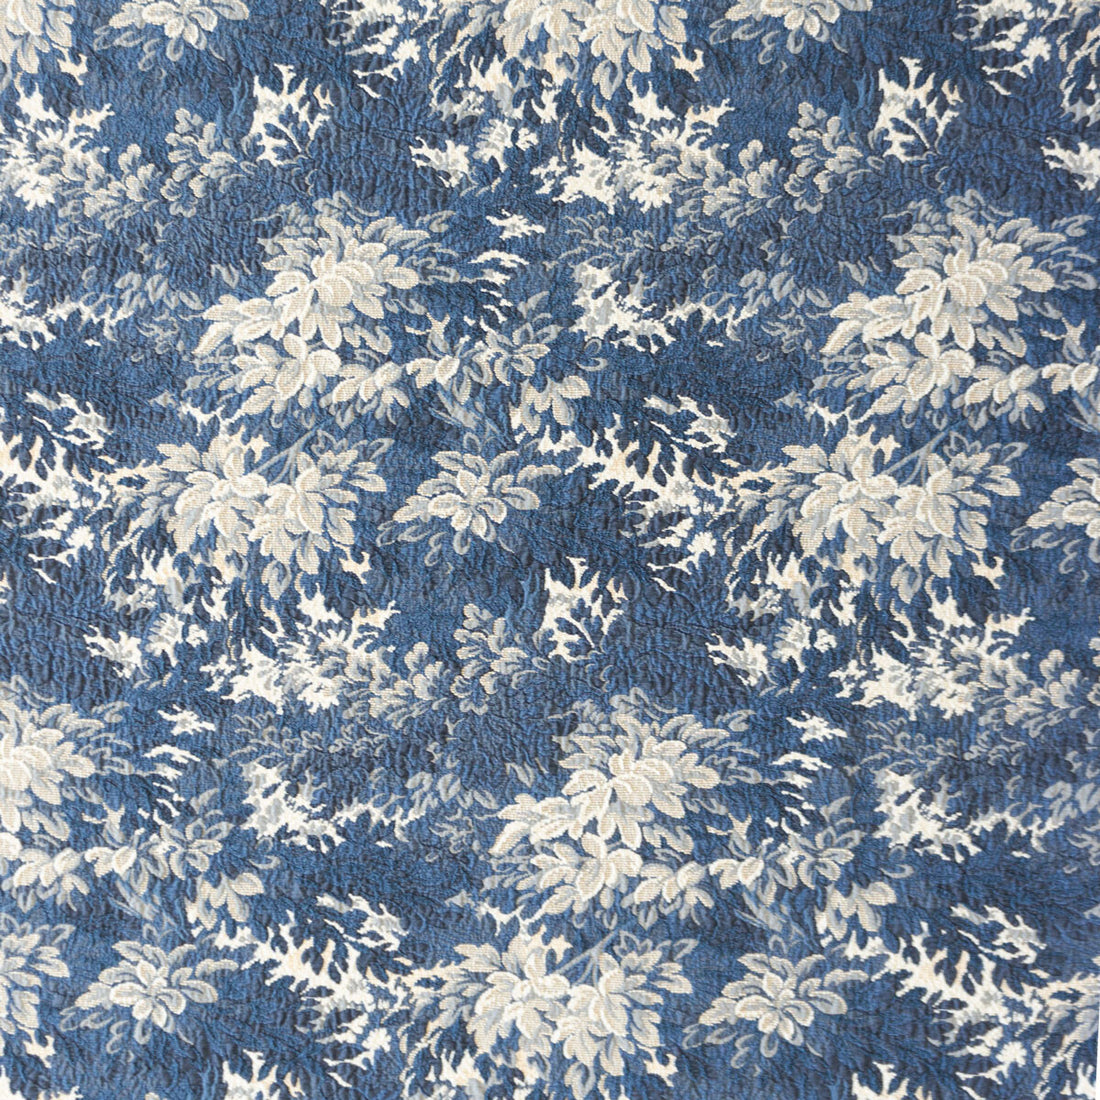 Jon fabric in azul color - pattern LCT1045.002.0 - by Gaston y Daniela in the Lorenzo Castillo VI collection